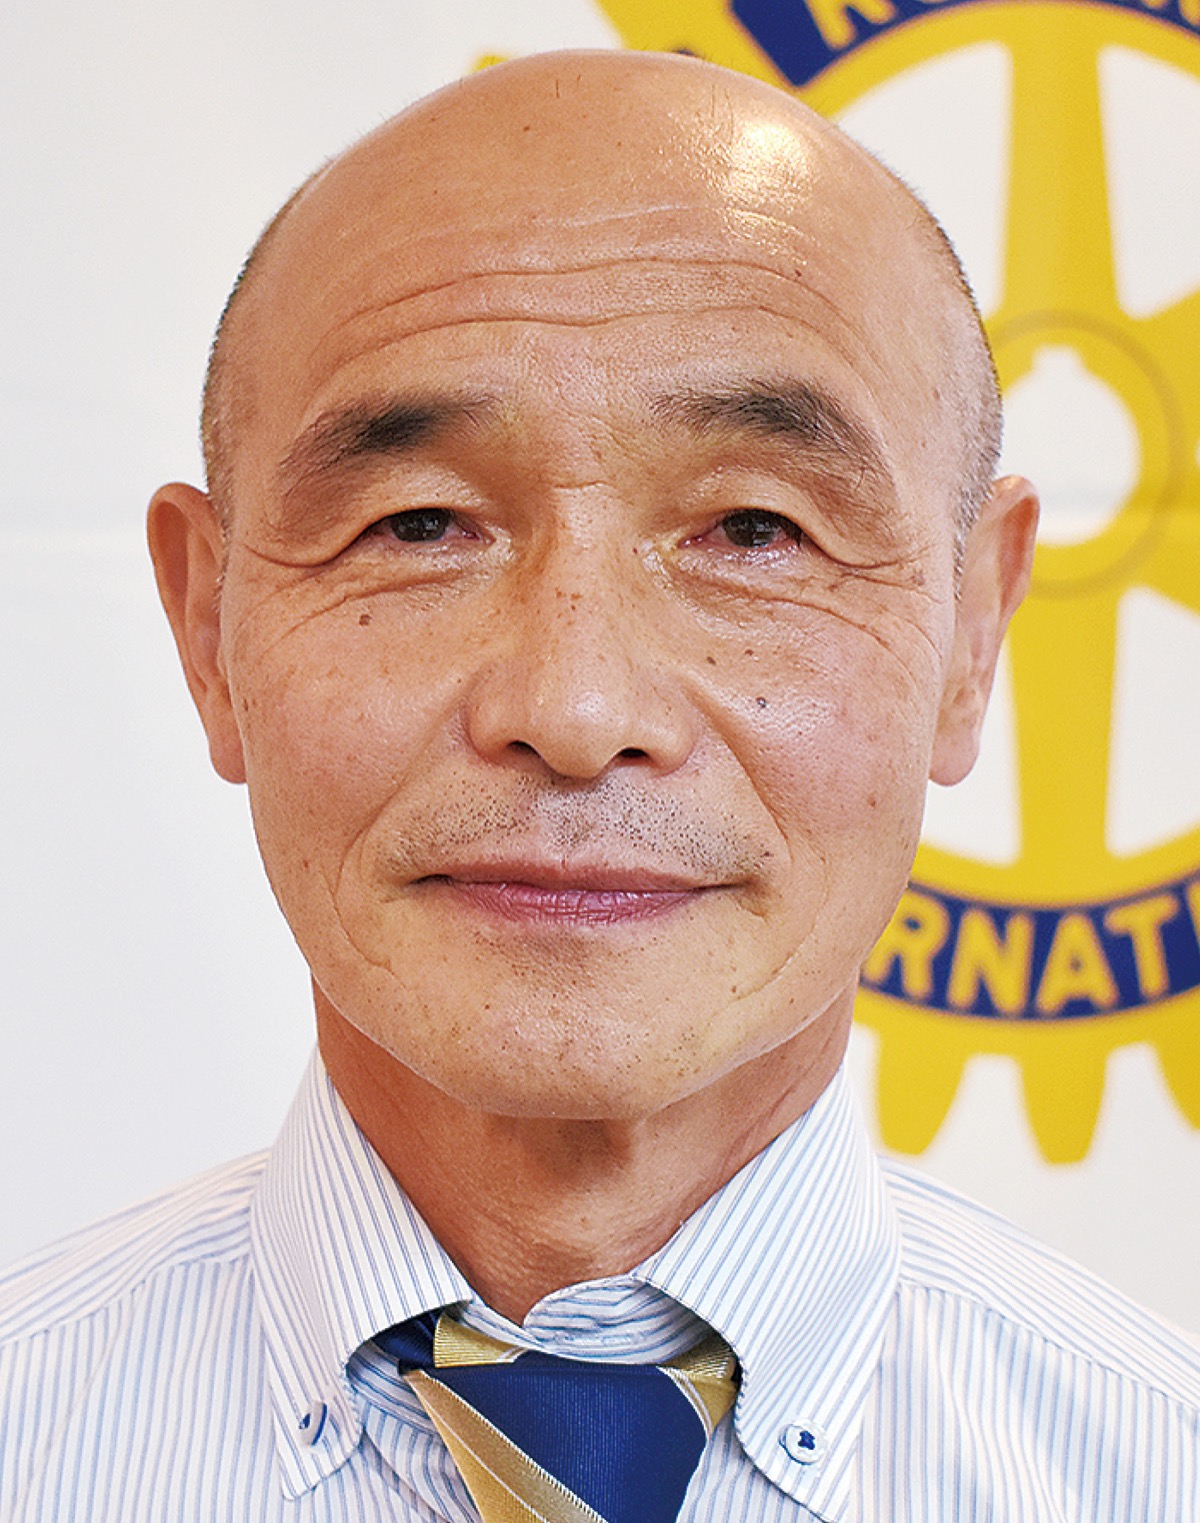 横浜泉ロータリークラブの2021-22年度新会長に就任した 鈴木 崇弘さん 戸塚区在住　61歳